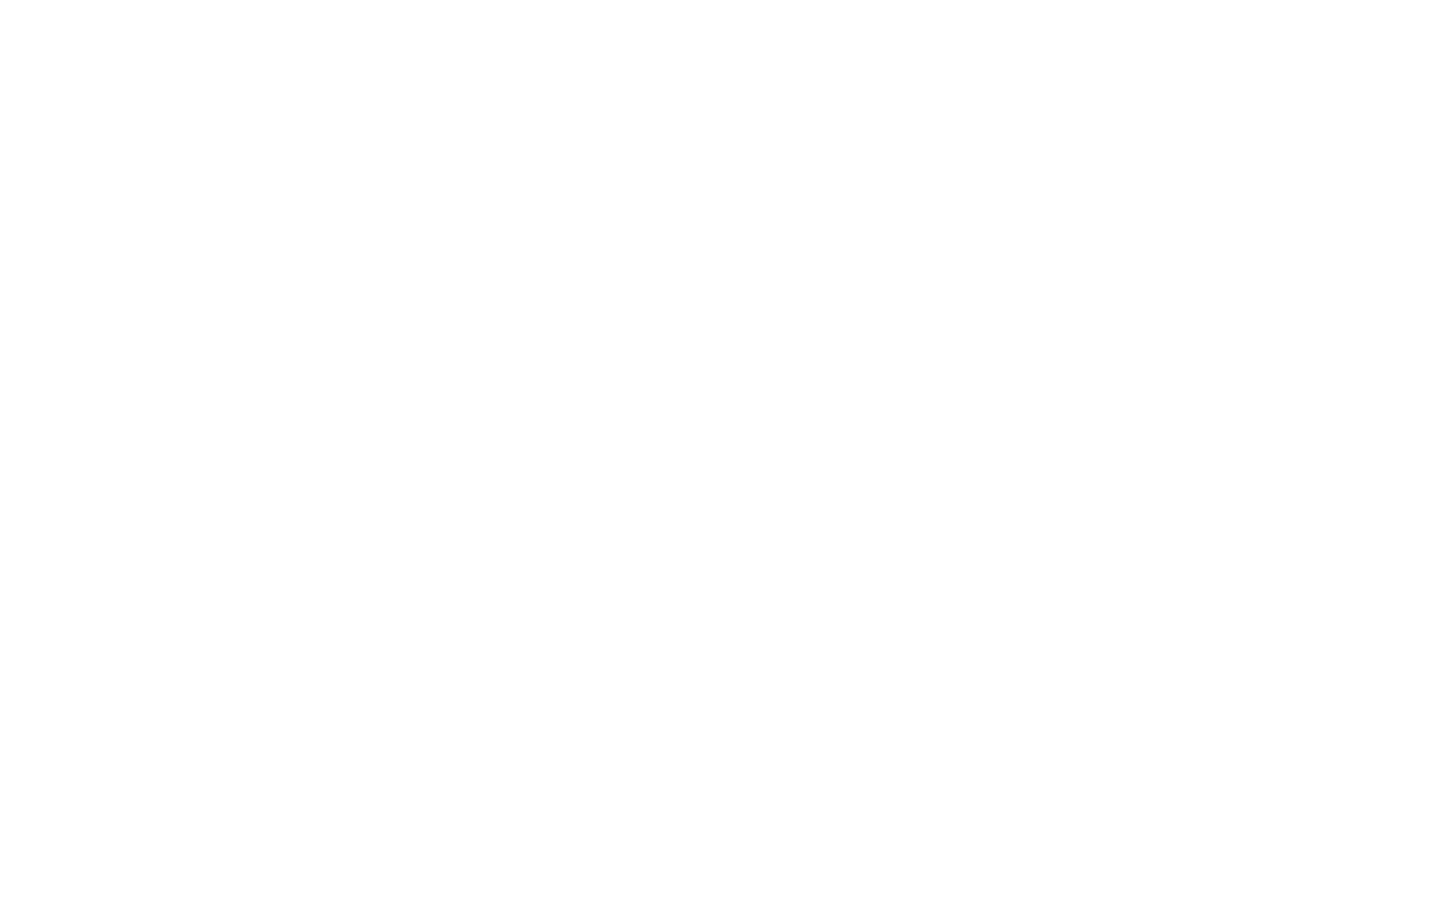 IBM AS 400 logo